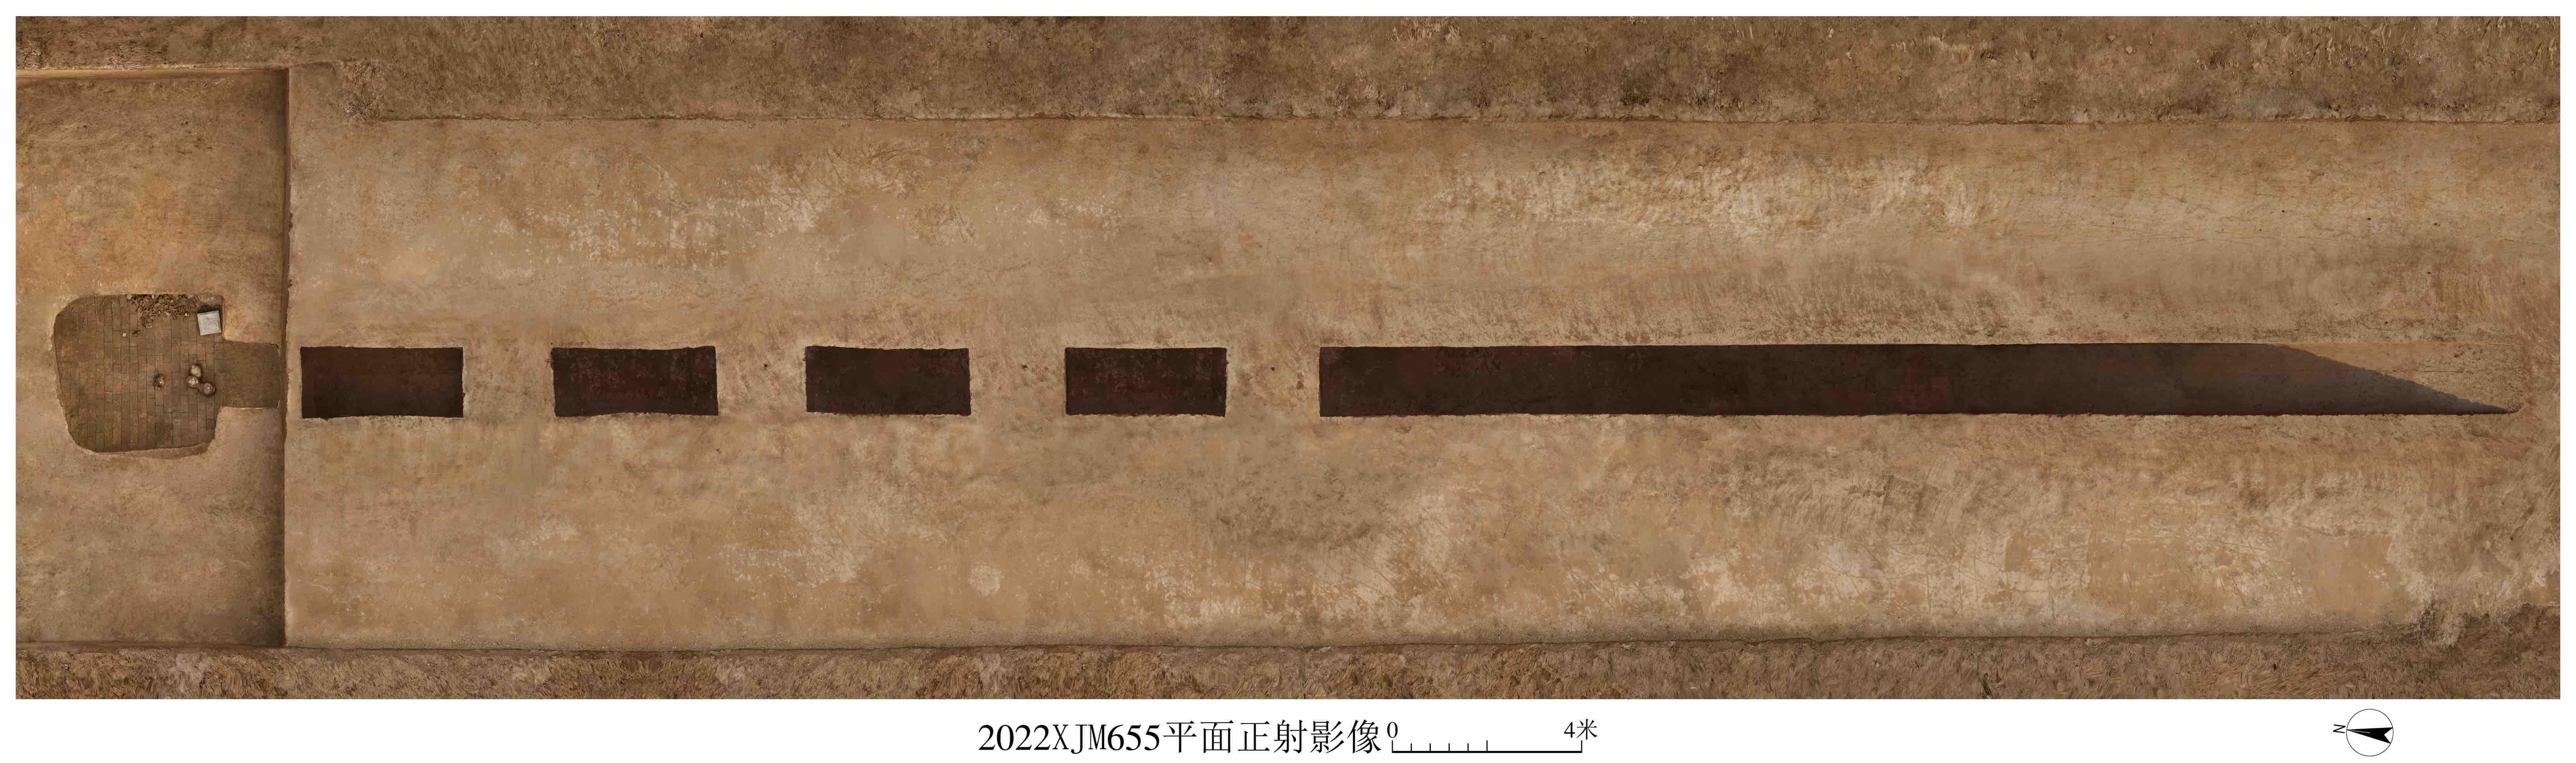 陕西省考古研究院发布了对北周宇文觉墓的考古发掘成果(图11)